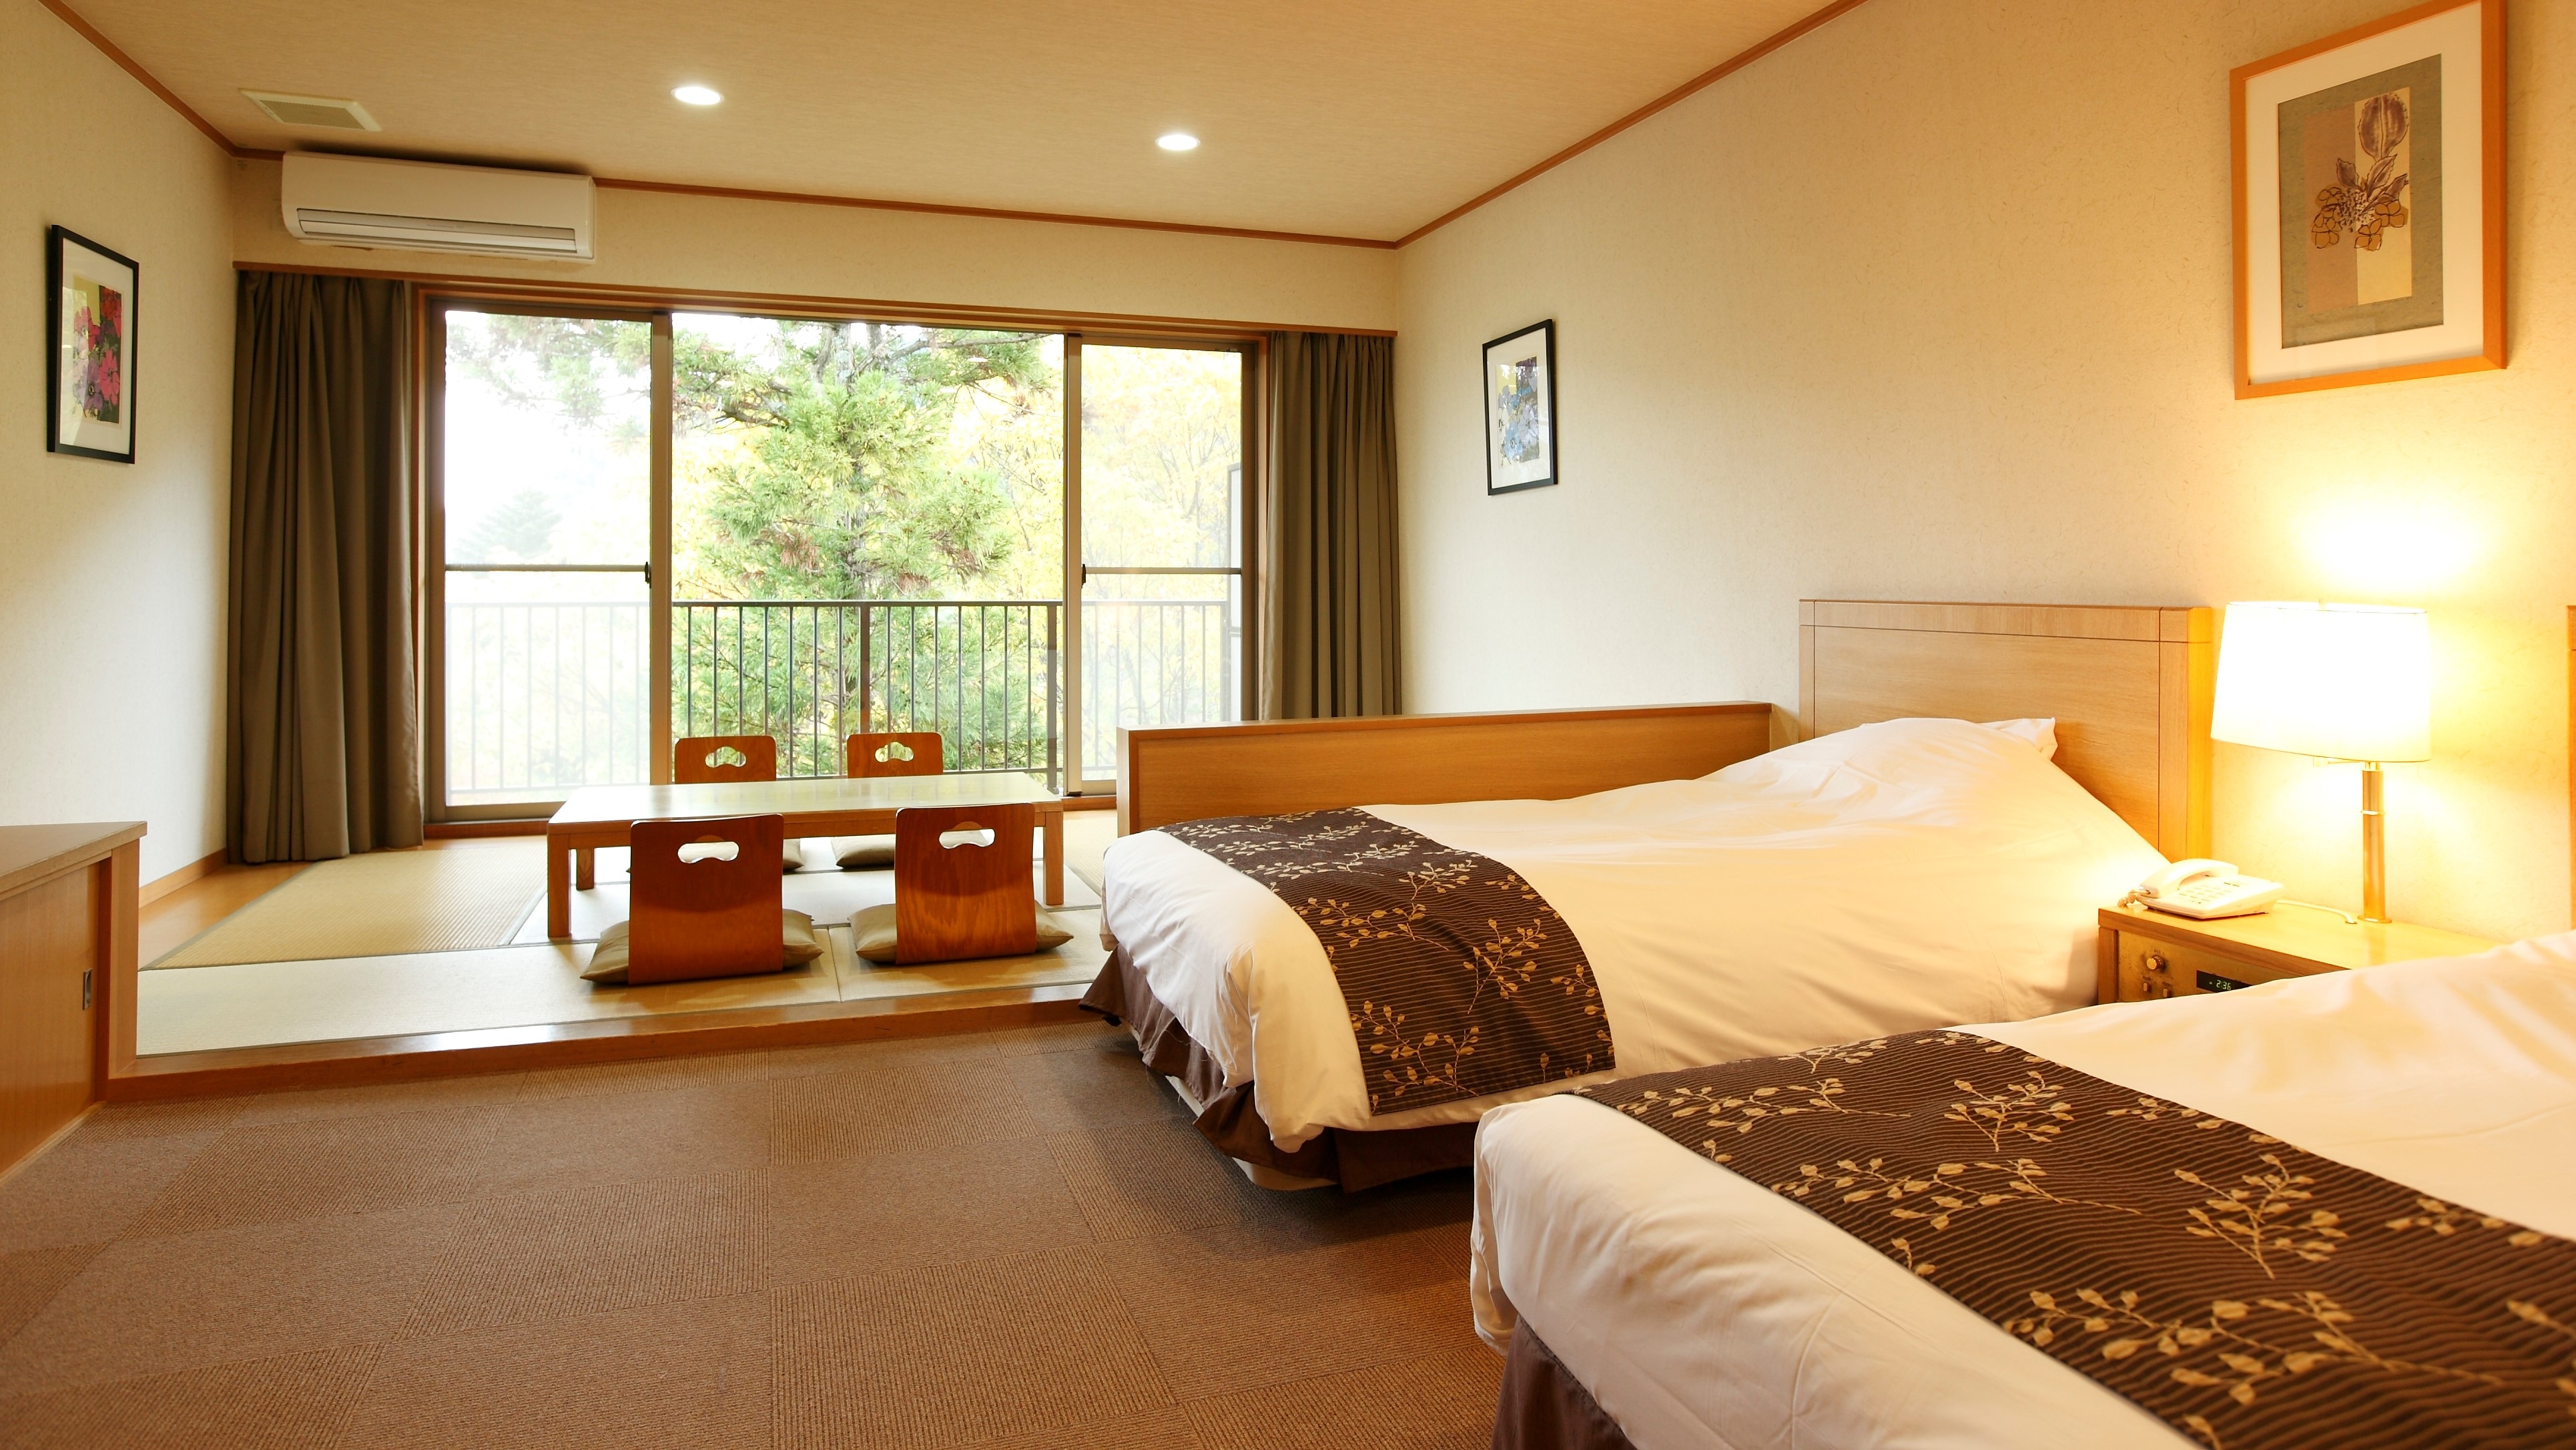 높이가 있는 침대 2개가 갖추어져 있어 여유롭게 편안한 시간을 보내실 수 있습니다.